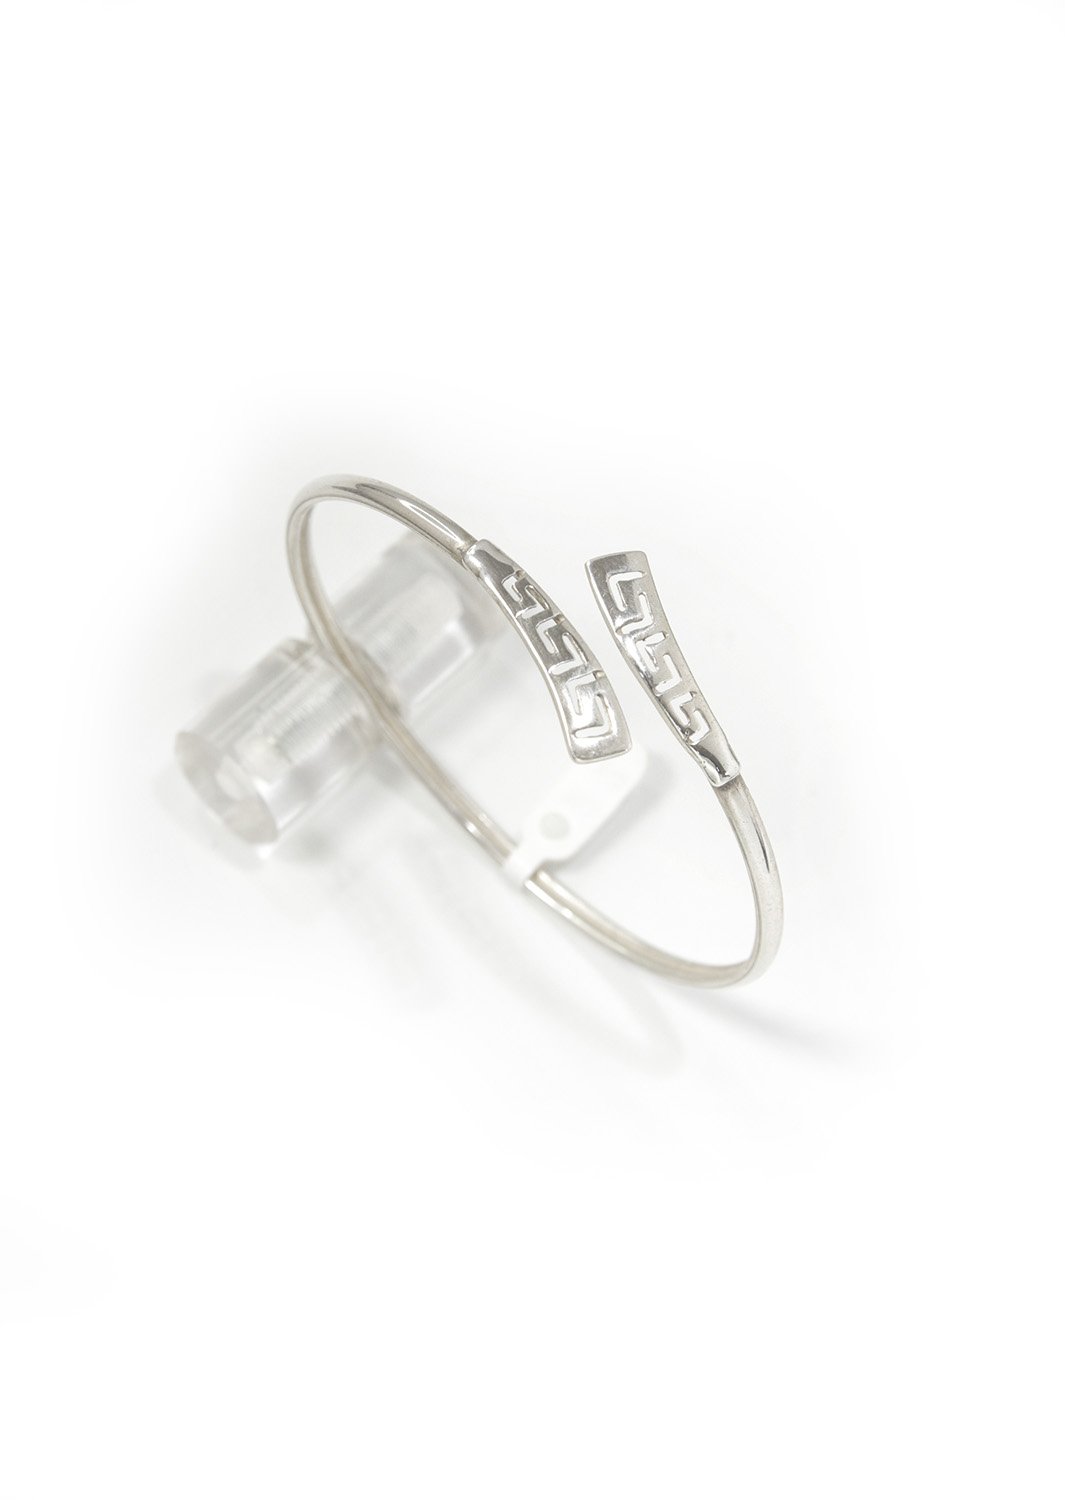 Greek key design - Meander silver cuff bracelet